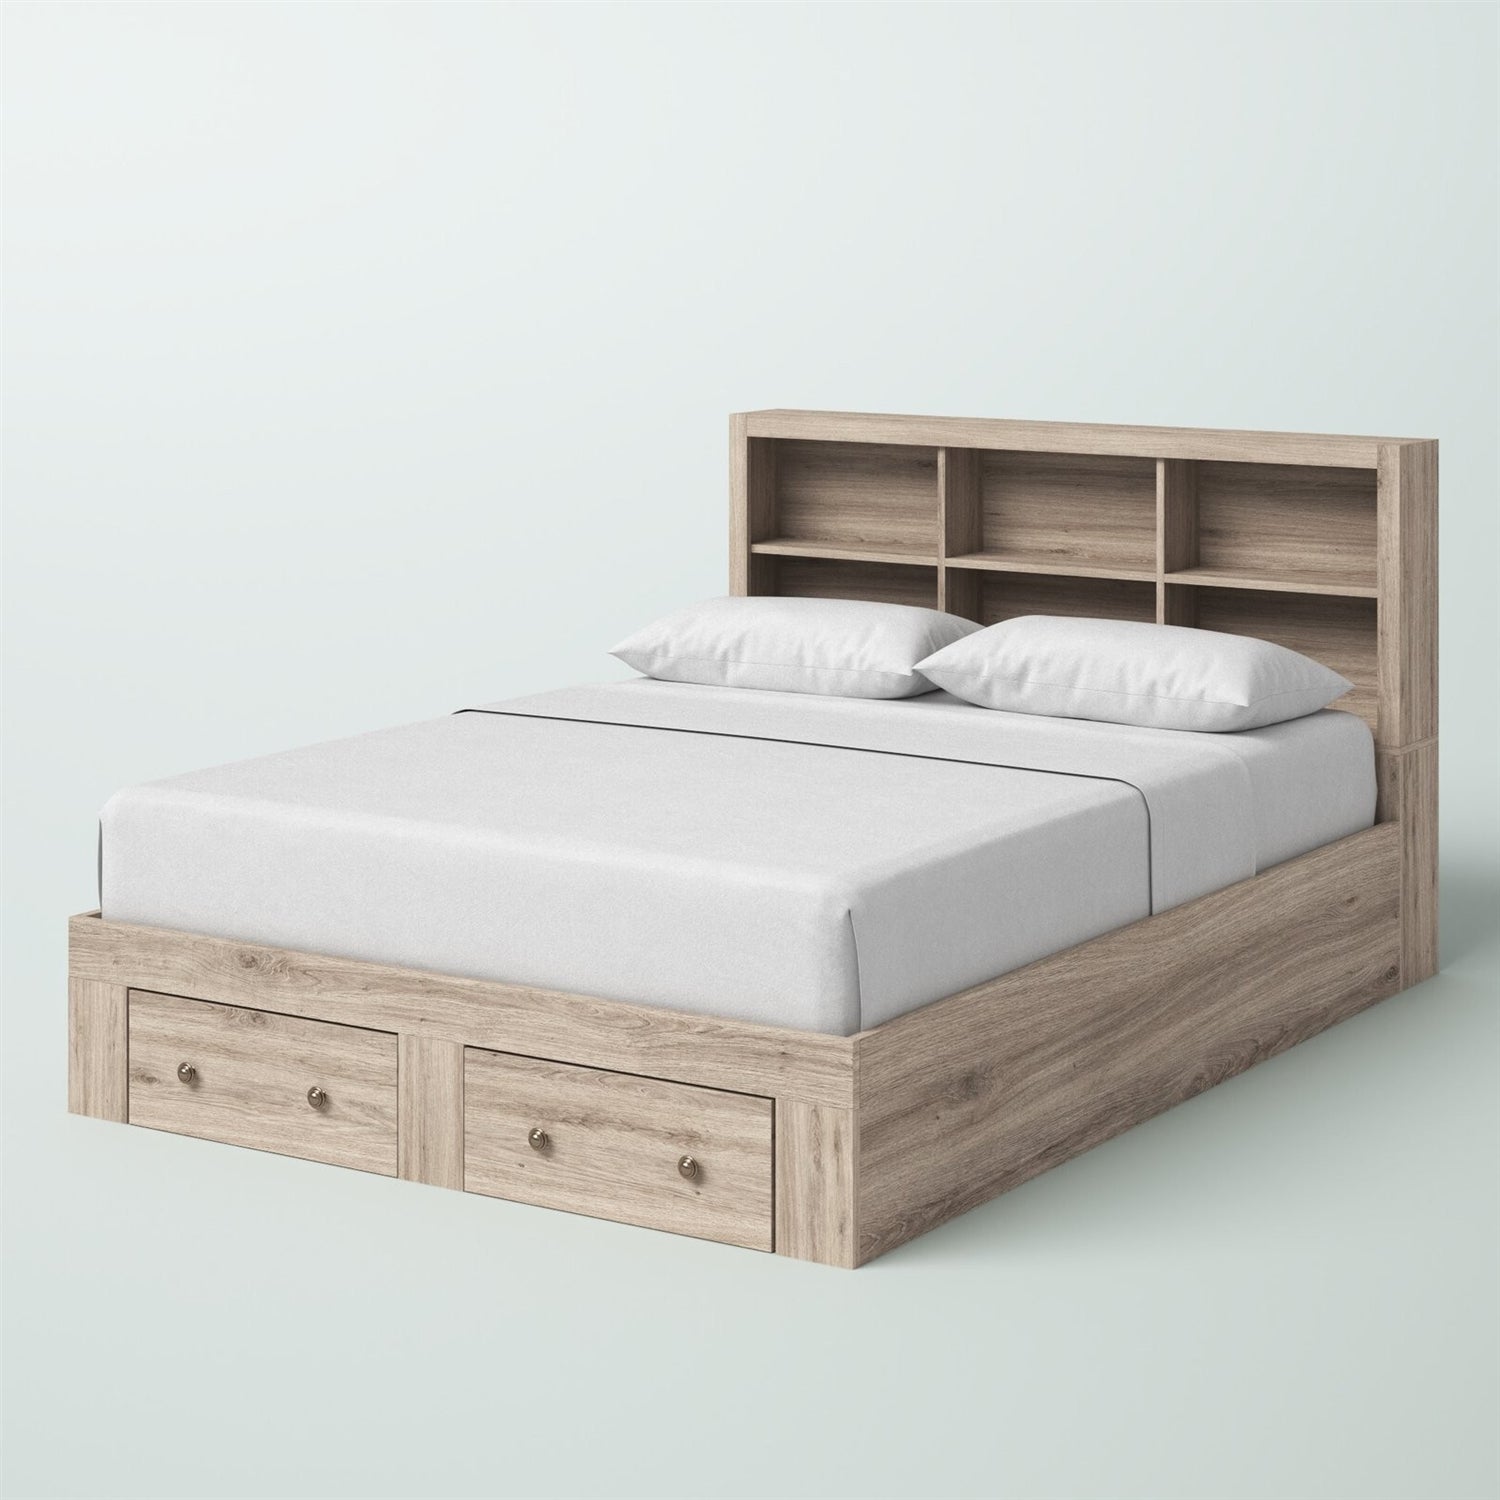 Bedroom > Bed Frames > Platform Beds - Queen Size Rustic Oak FarmHouse Low Profile 2 Drawer Storage Platform Bed